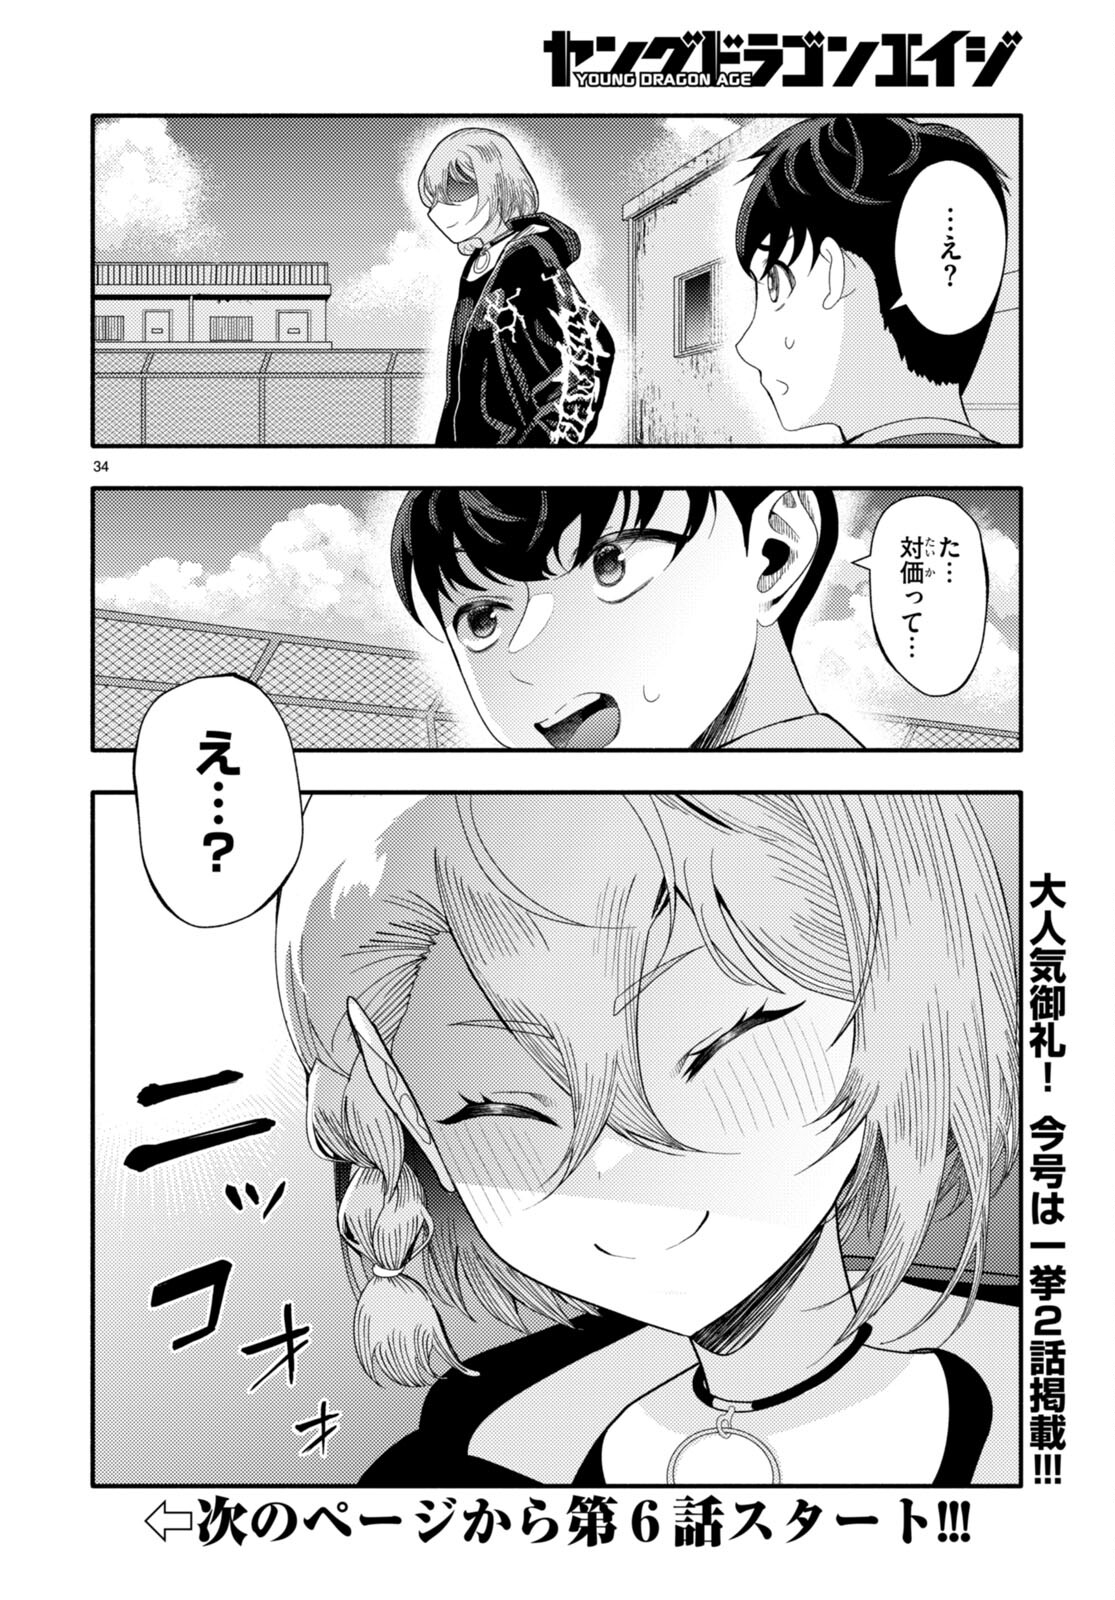 Akuma wa Rozario ni Kiss wo suru - Chapter 5 - Page 34